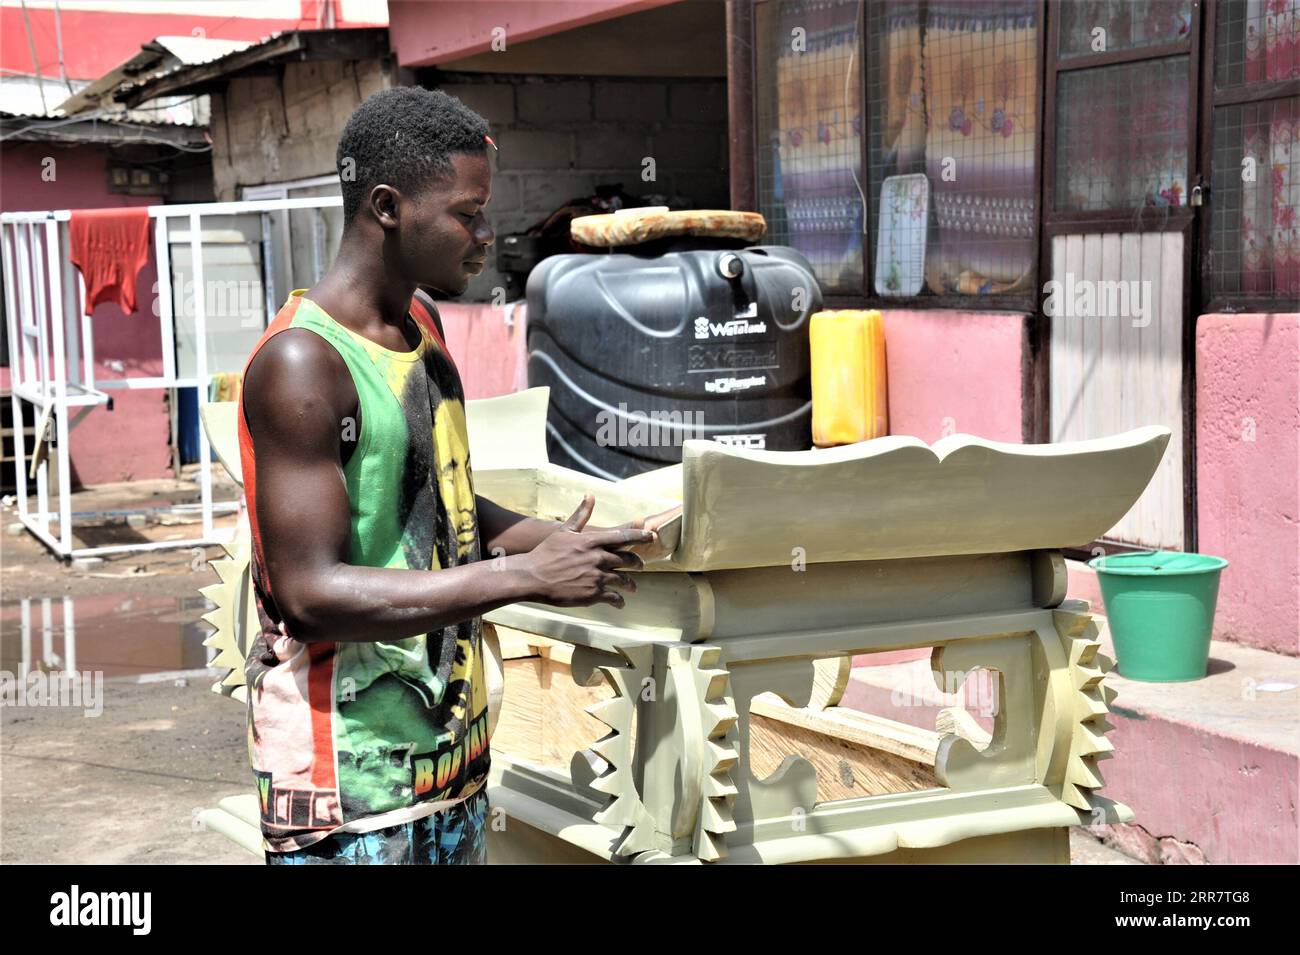 210404 -- ACCRA, le 4 avril 2021 -- le charpentier Lawrence Anang fabrique un cercueil dans un atelier de cercueil à Accra, capitale du Ghana, le 23 mars 2021. Les cercueils au Ghana pourraient non seulement être des boîtes qui contiennent le défunt, mais aussi être des œuvres d'art qui varient dans plusieurs styles, une façon unique pour les gens de commémorer leurs bien-aimés. POUR ALLER AVEC la caractéristique : Jeune charpentier ghanéen poursuit la tradition de fabrication de cercueils stylisés GHANA-ACCRA-CARPENTER-TRADITION-CERCUEIL FAIRE XuxZheng PUBLICATIONxNOTxINxCHN Banque D'Images